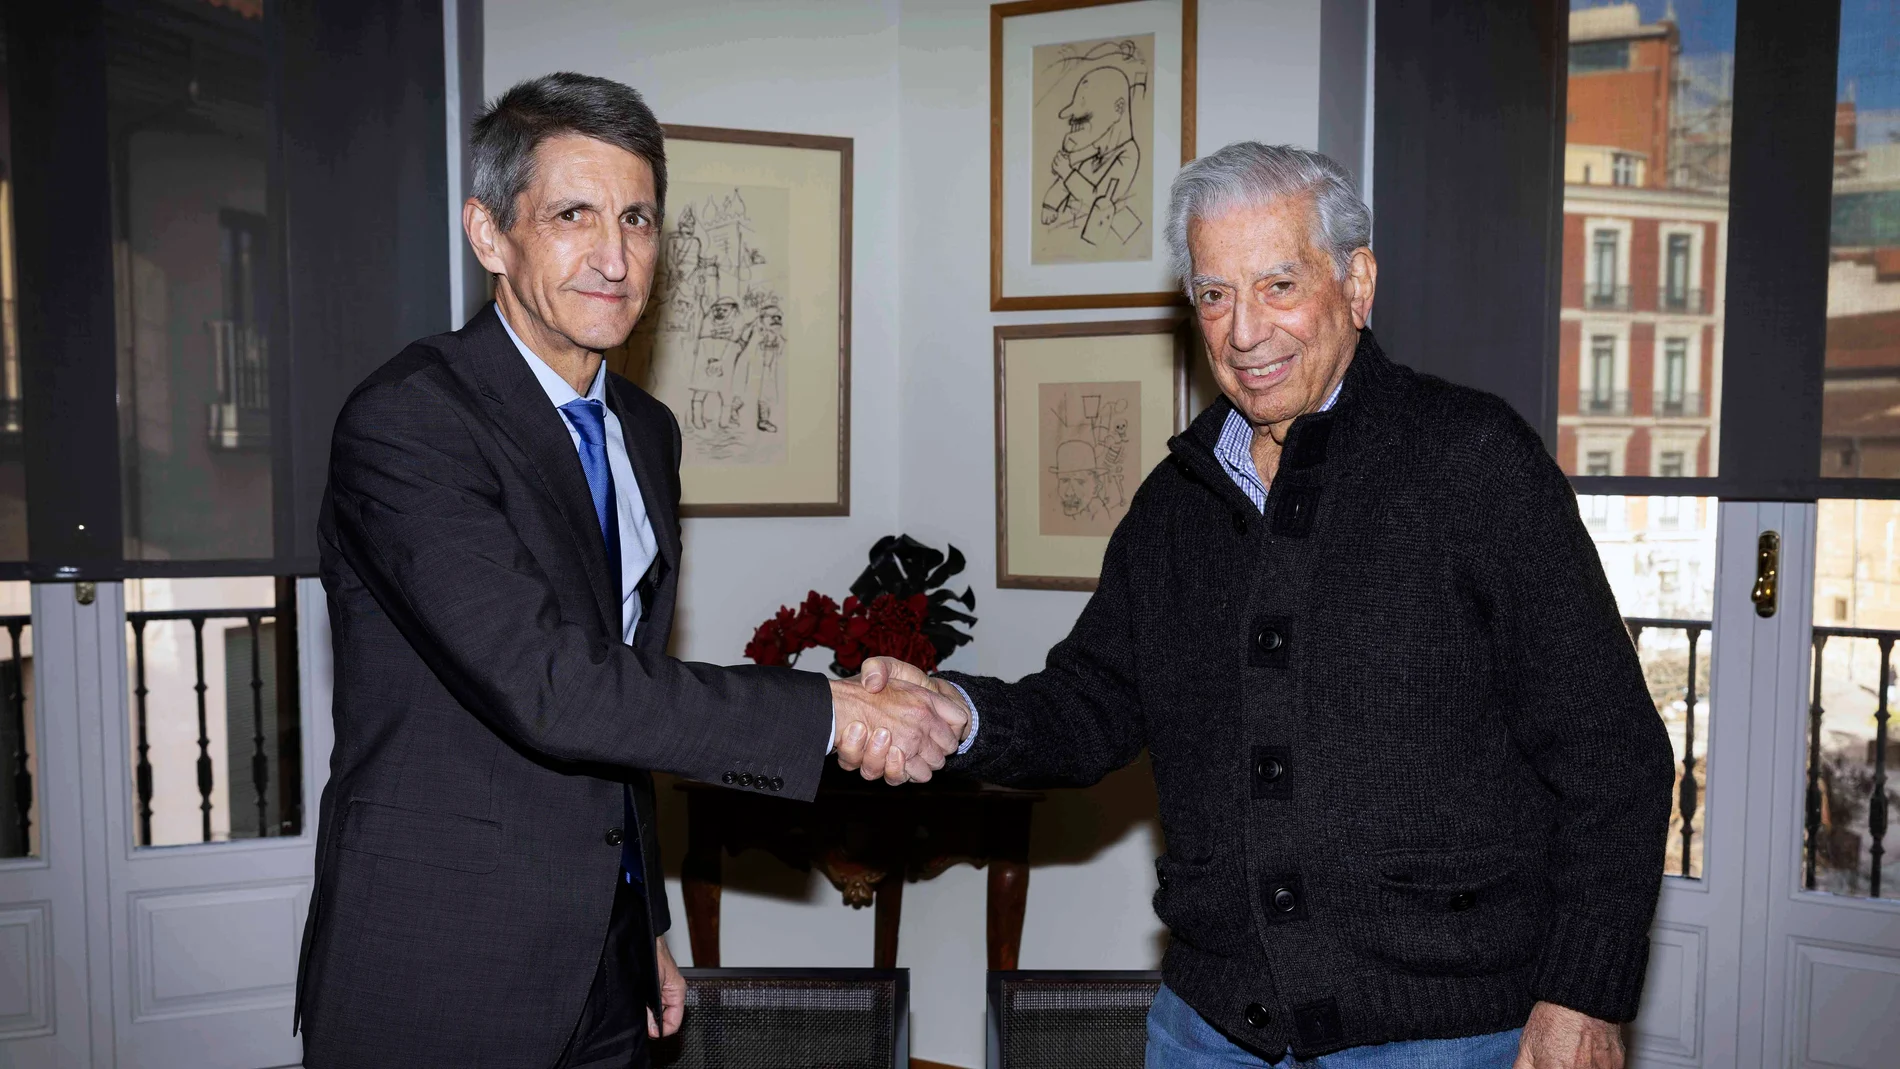 El presidente de la Fundación Bancaria Unicaja, José M. Domínguez, estrecha la mano del Premio Nobel de Literatura y presidente de la Cátedra que lleva su nombre, Mario Vargas Llosa, tras la firma del convenio